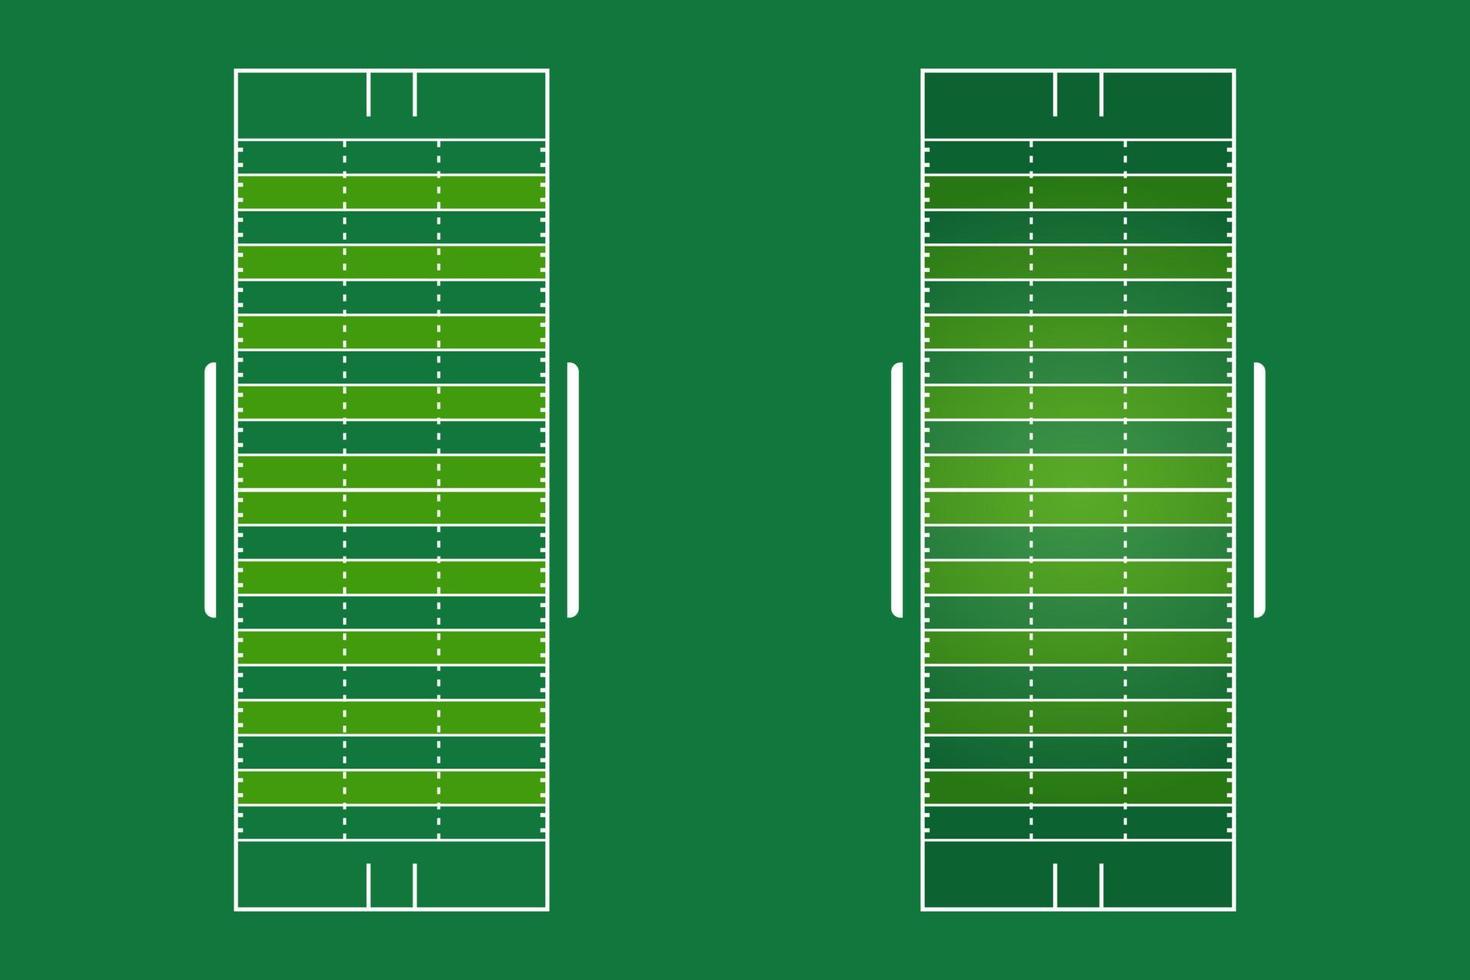 diseño plano de la cancha de fútbol americano, ilustración gráfica del campo de fútbol, vector de cancha de fútbol americano y diseño.